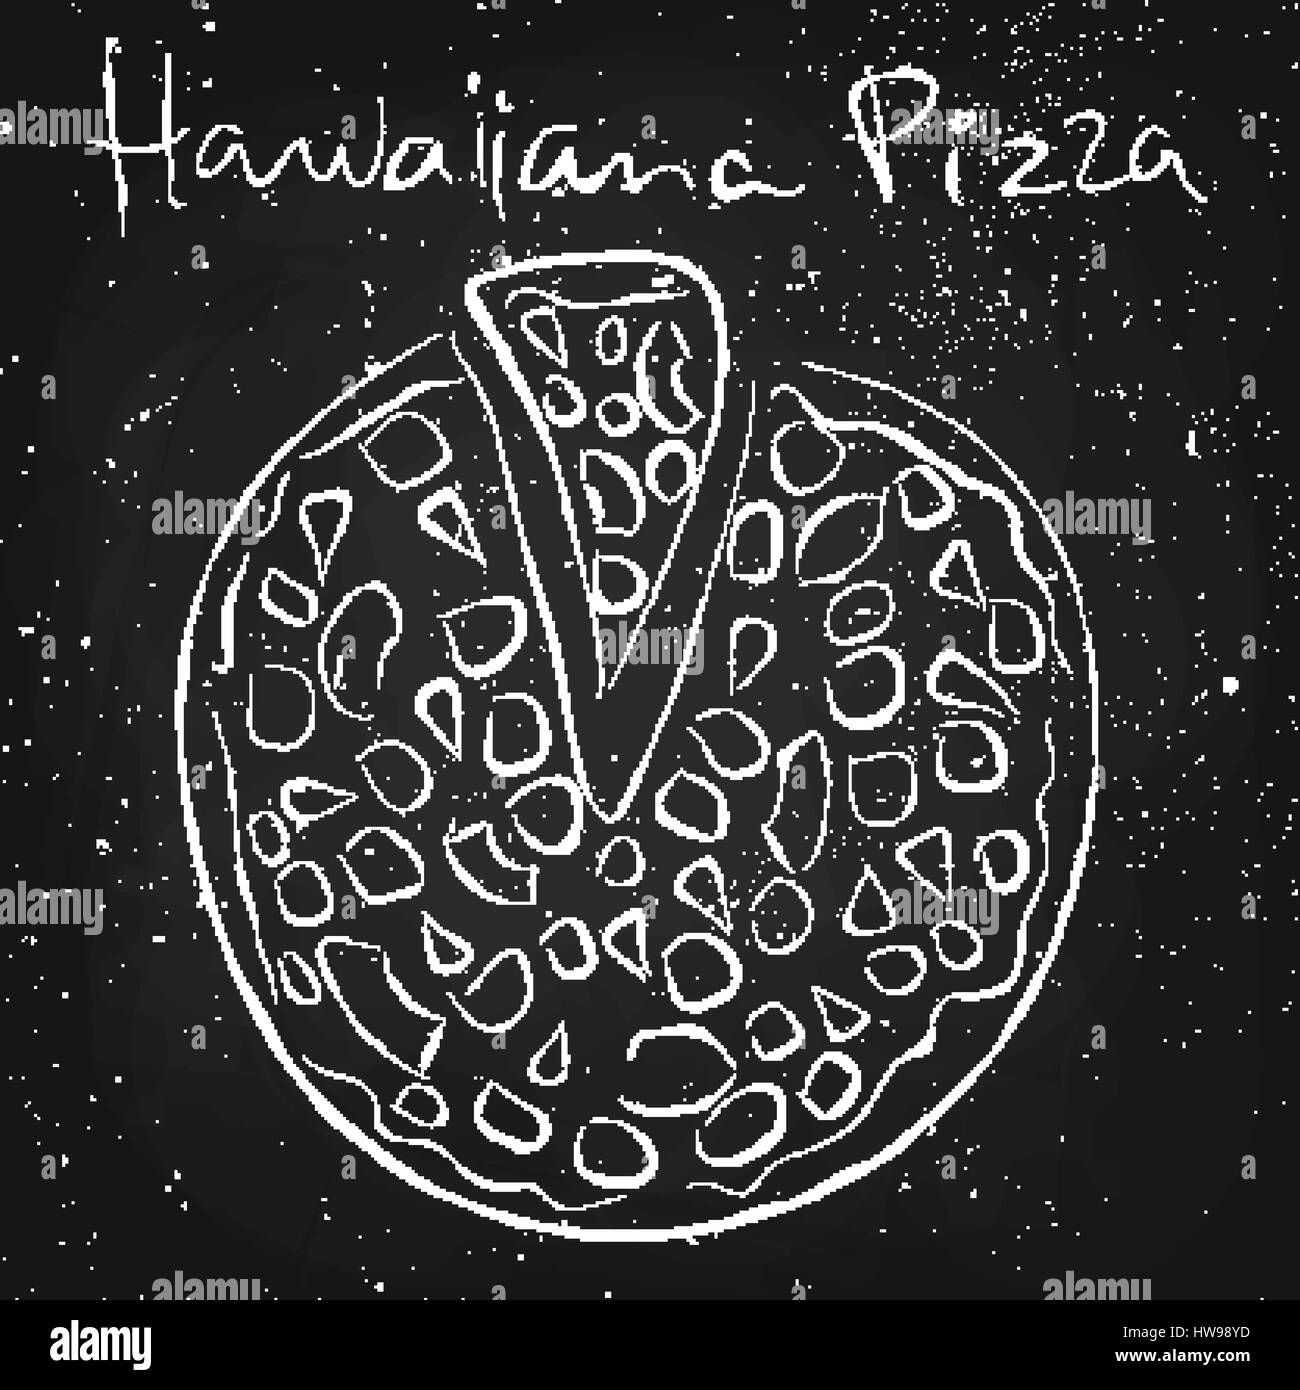 Hawaiiana pizza, disegnati in gesso su una lavagna Illustrazione Vettoriale